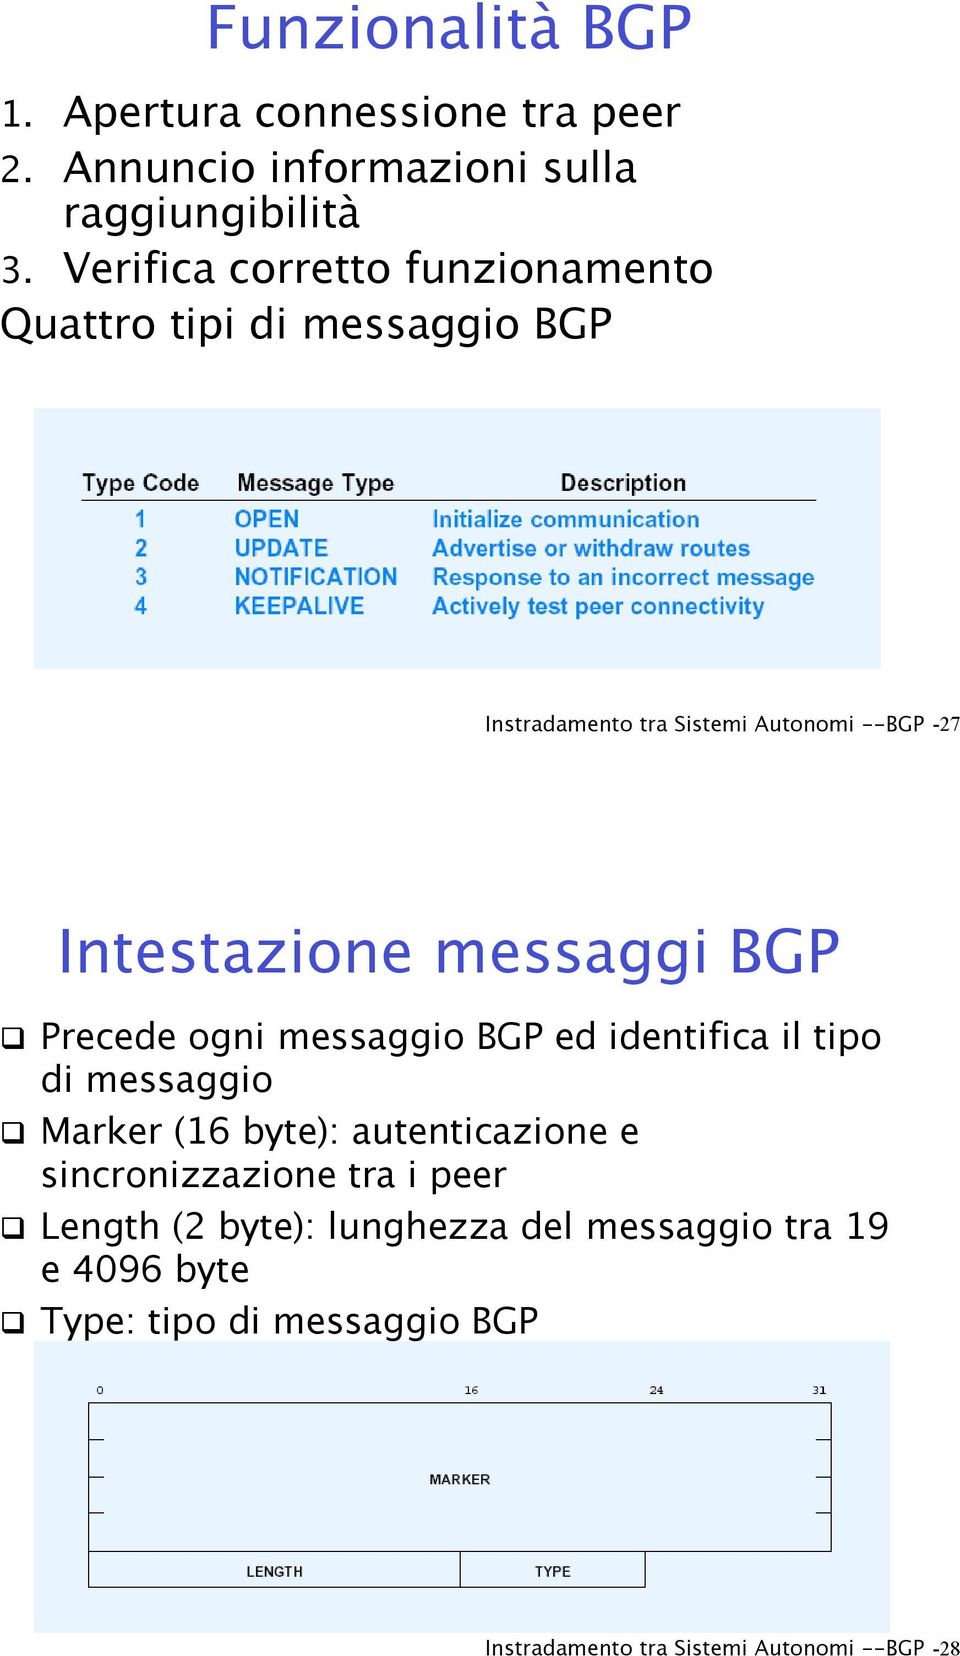 messaggi BGP! Precede ogni messaggio BGP ed identifica il tipo di messaggio!